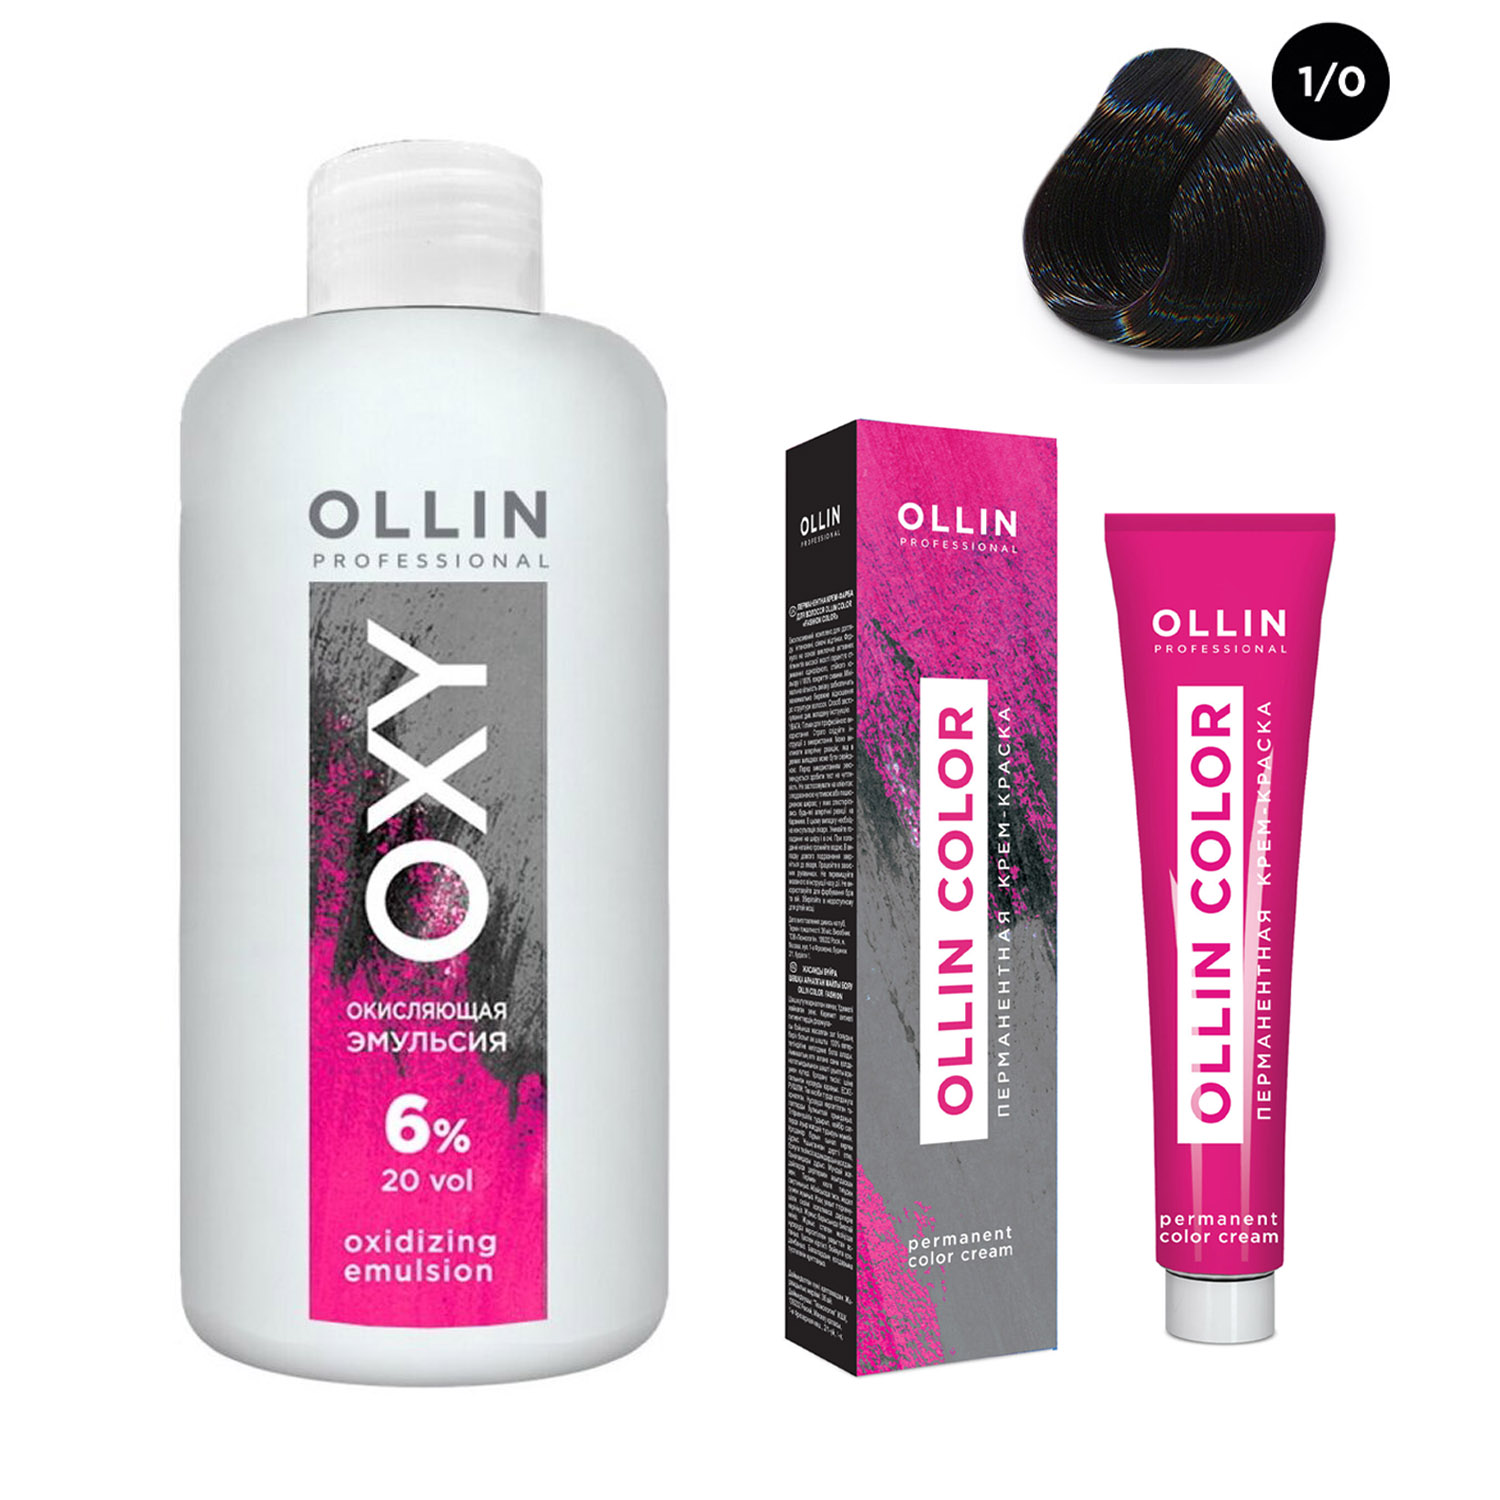 Купить Ollin Professional Набор Перманентная крем-краска для волос Ollin Color оттенок 1/0 иссиня-черный 100 мл + Окисляющая эмульсия Oxy 6% 150 мл (Ollin Professional, Ollin Color), Россия